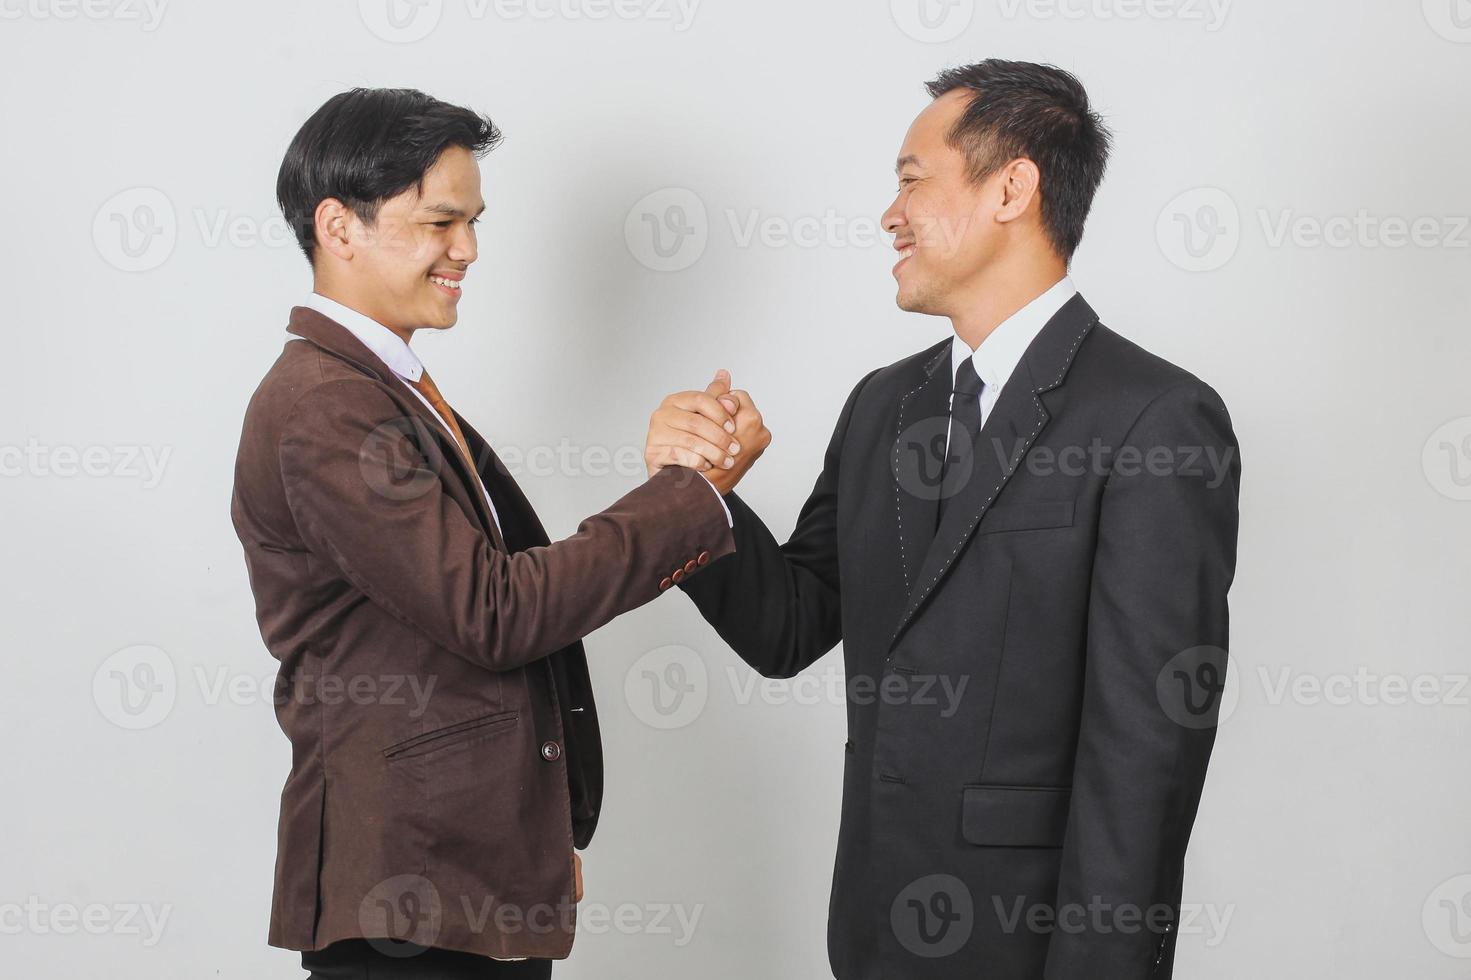 deux hommes d'affaires asiatiques en costume et cravate se regardant faisant une poignée de main d'équipe pour leur succès photo